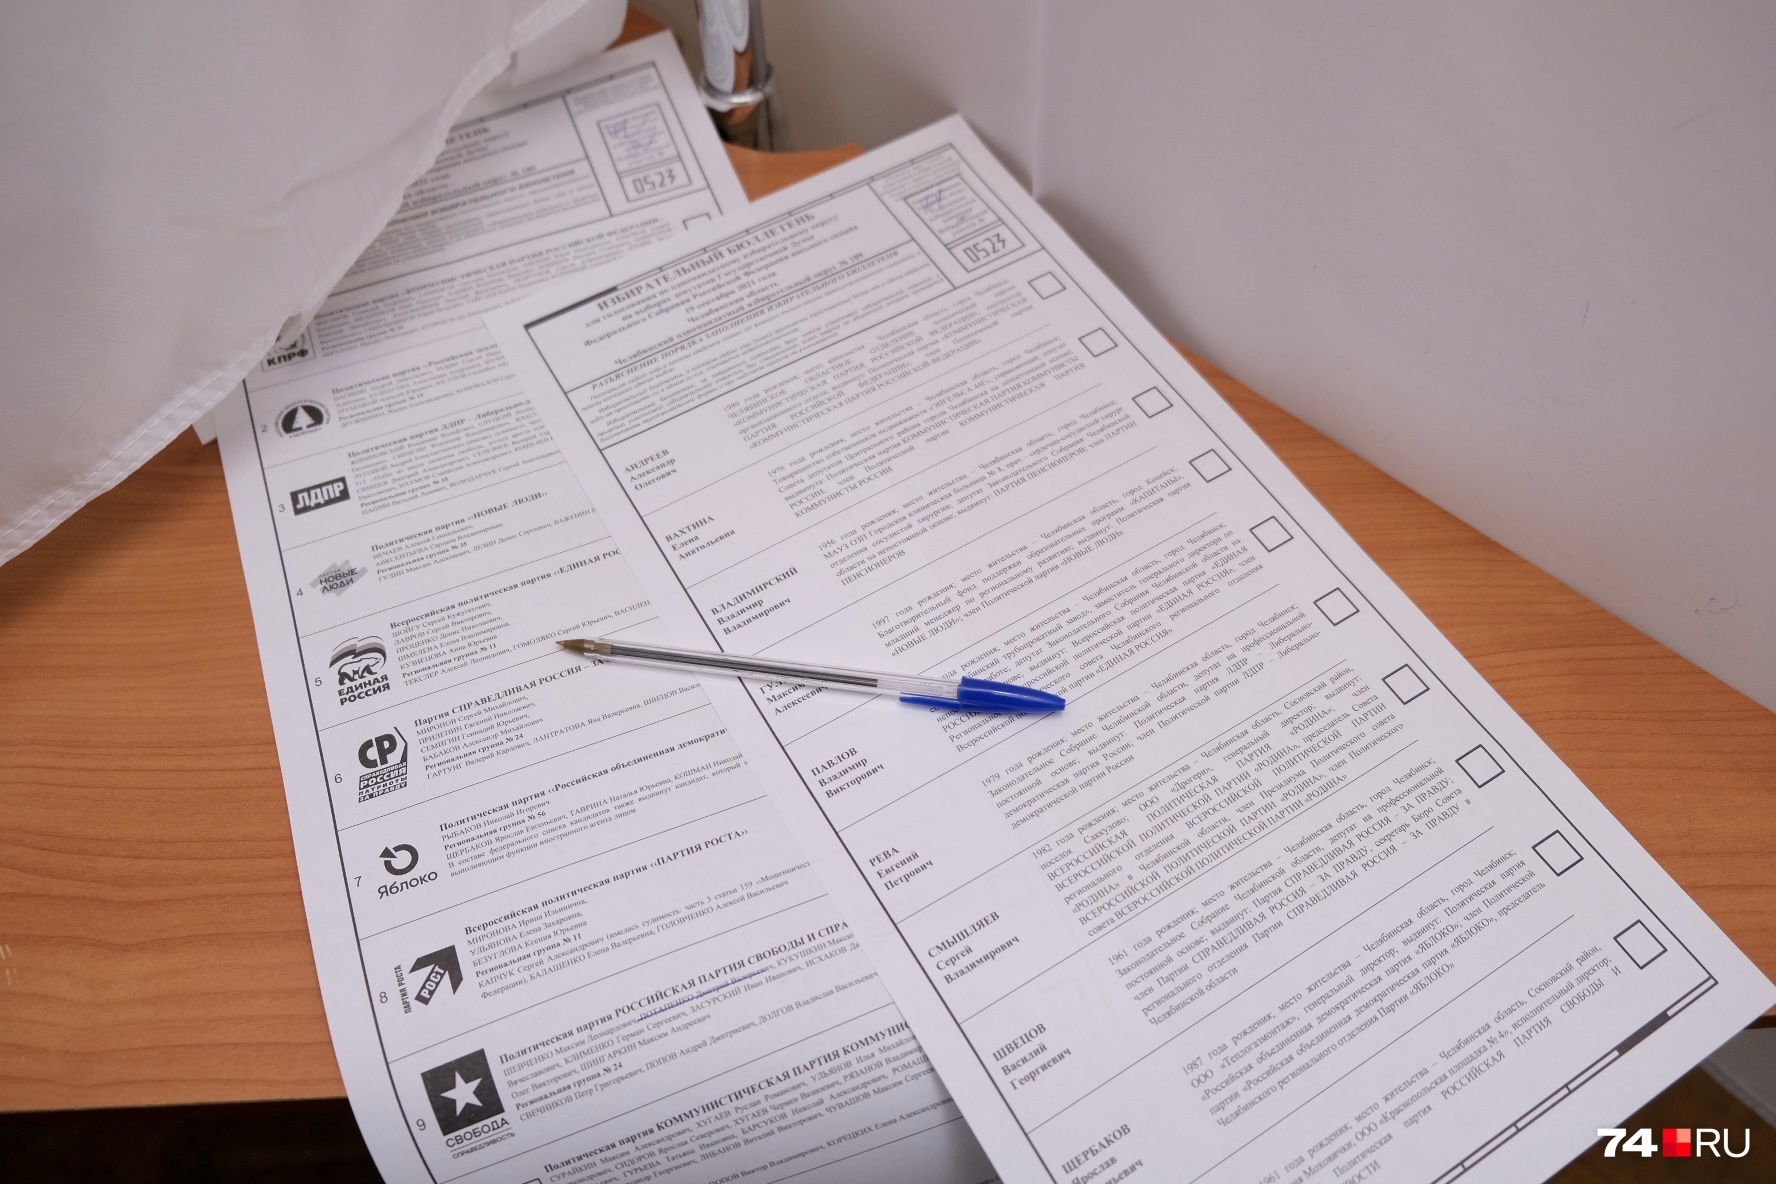 Саянск показывает самую низкую активность на выборах депутатов гордумы